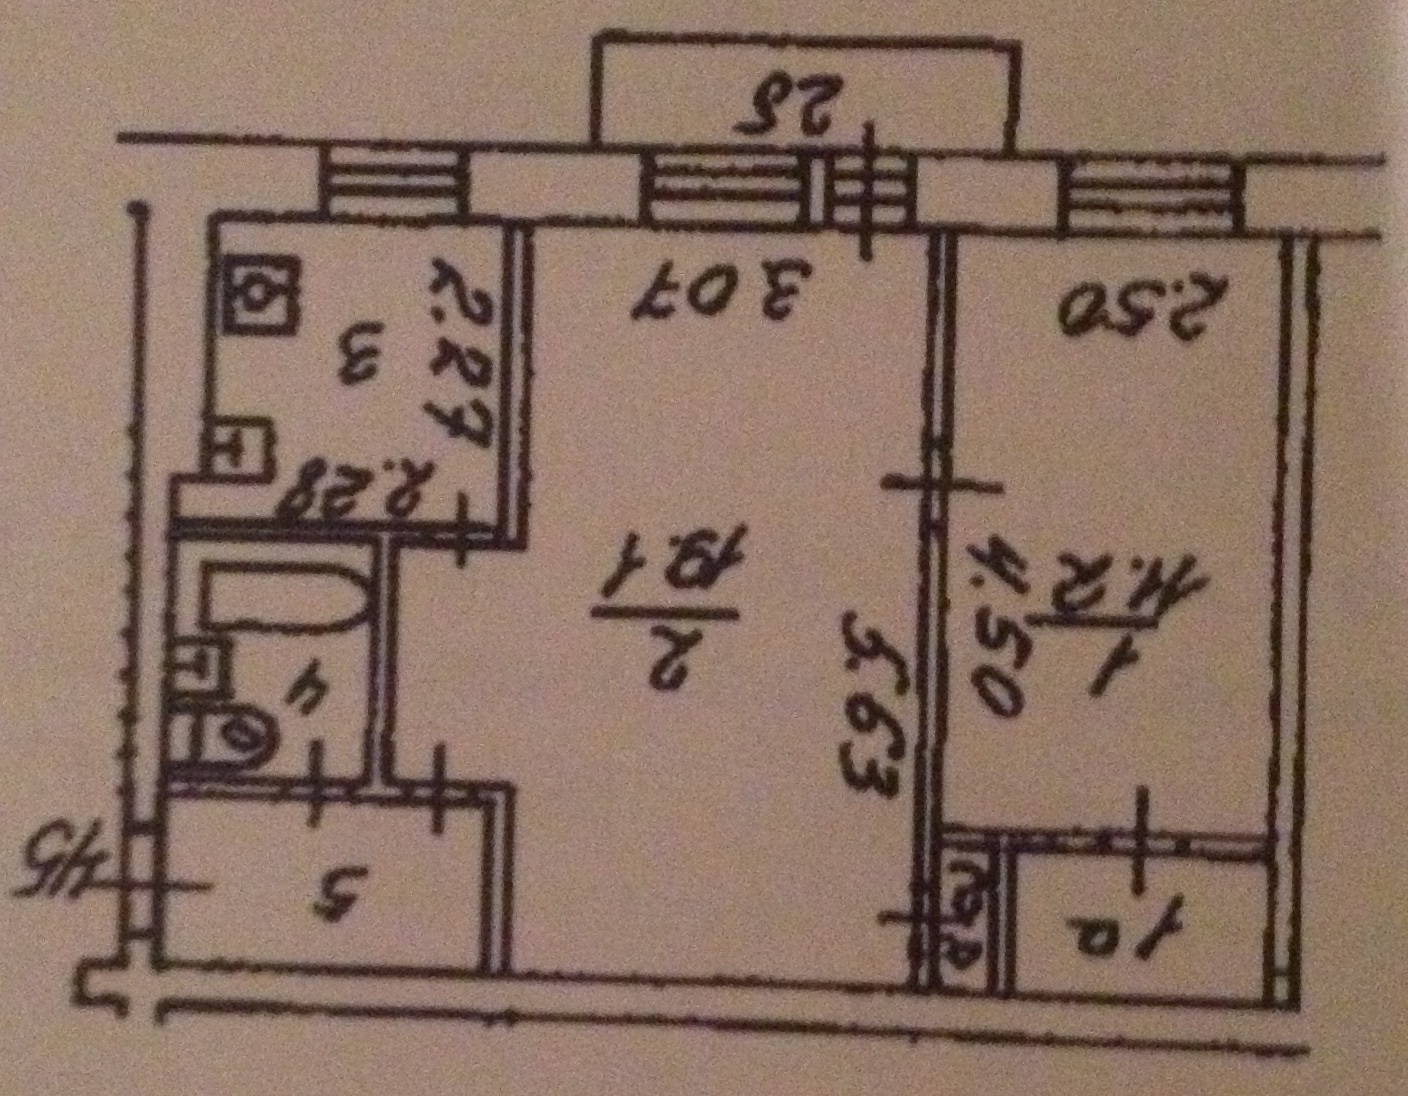 План БТИ двухкомнатной квартиры серии 1-510